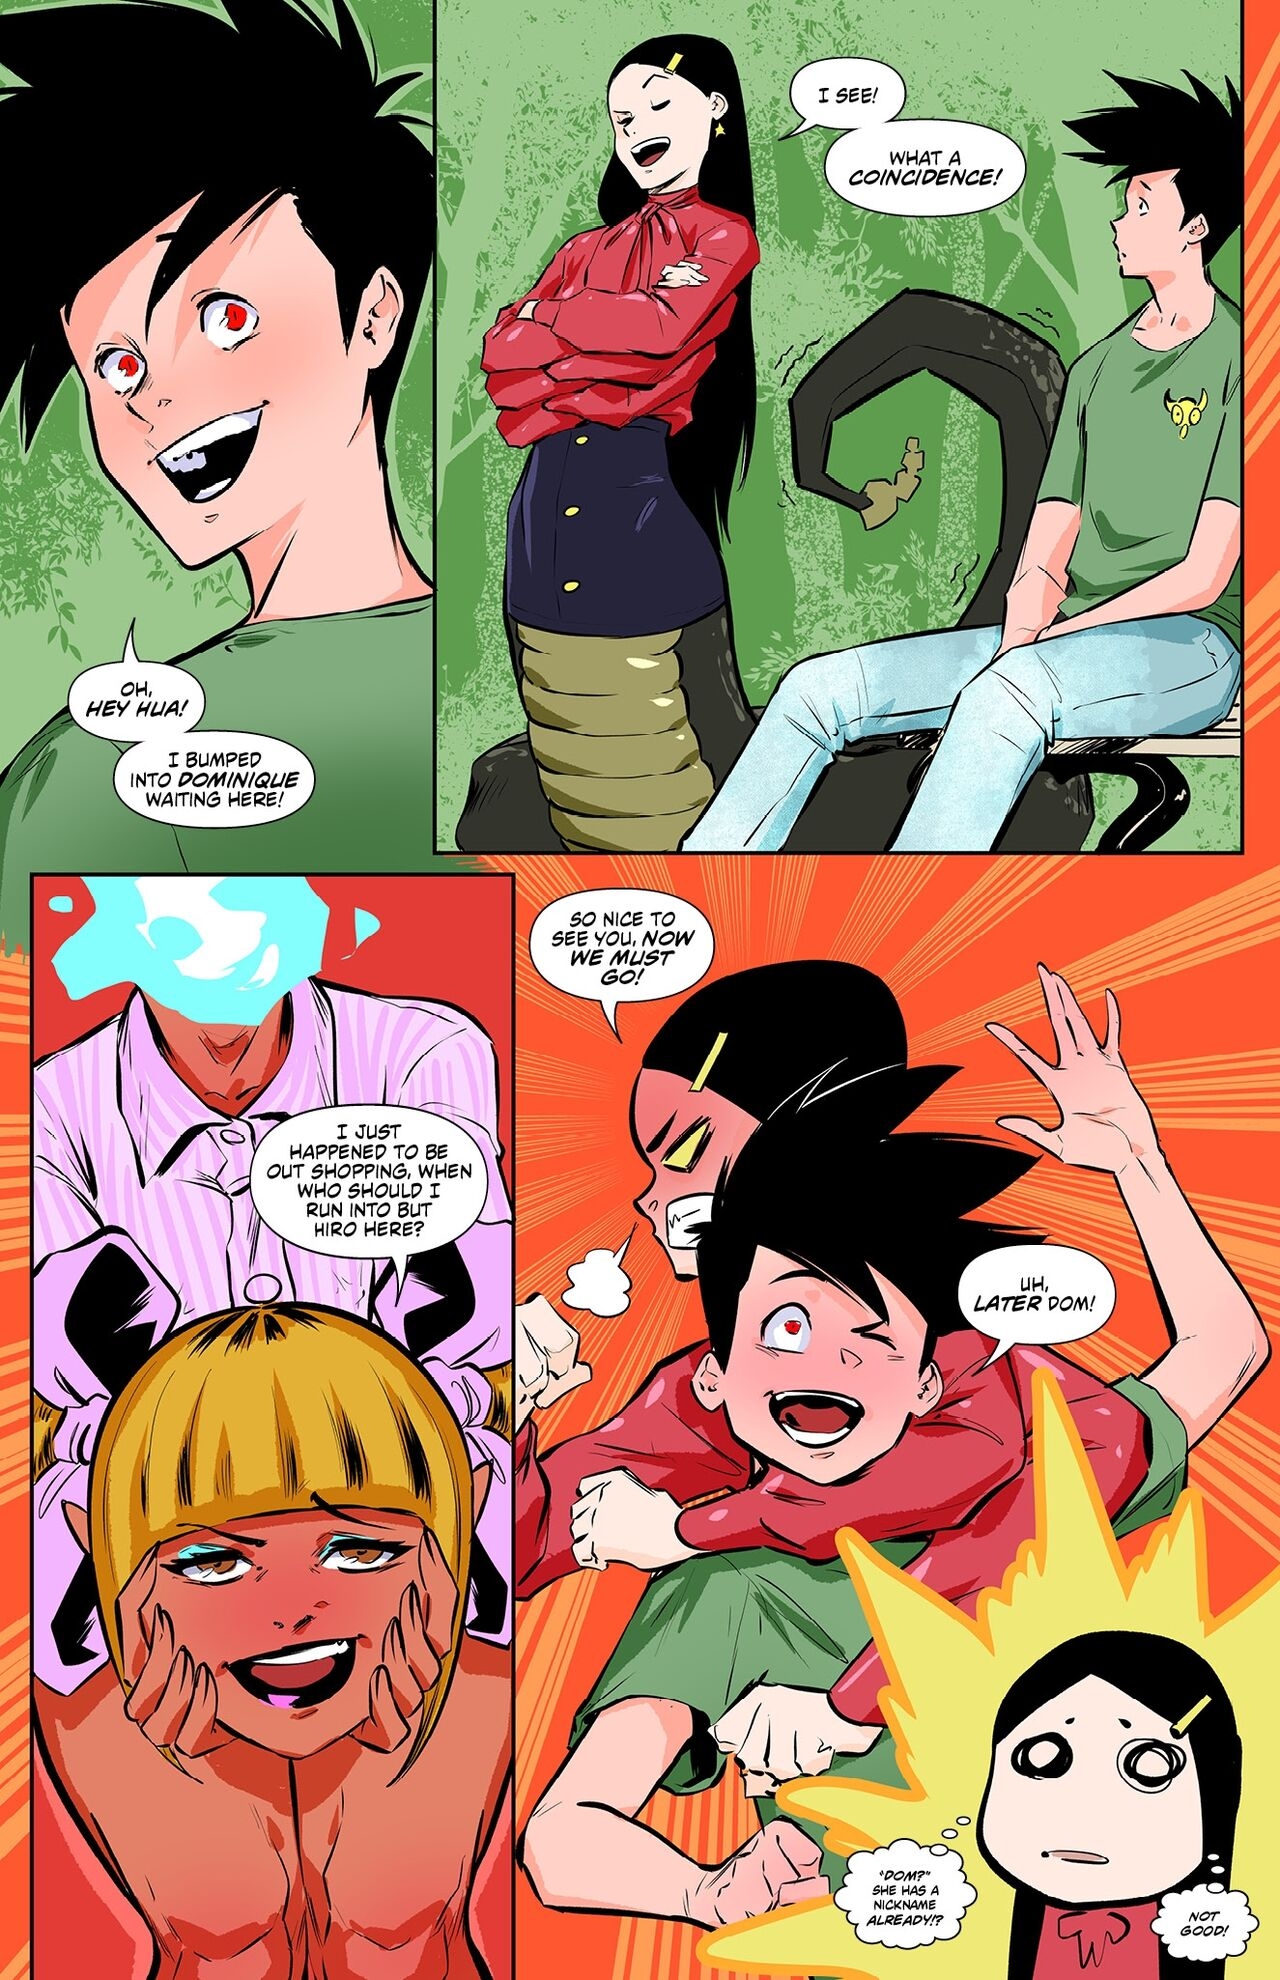 [Worky Zark] Monster Girl Academy Issue 9 2